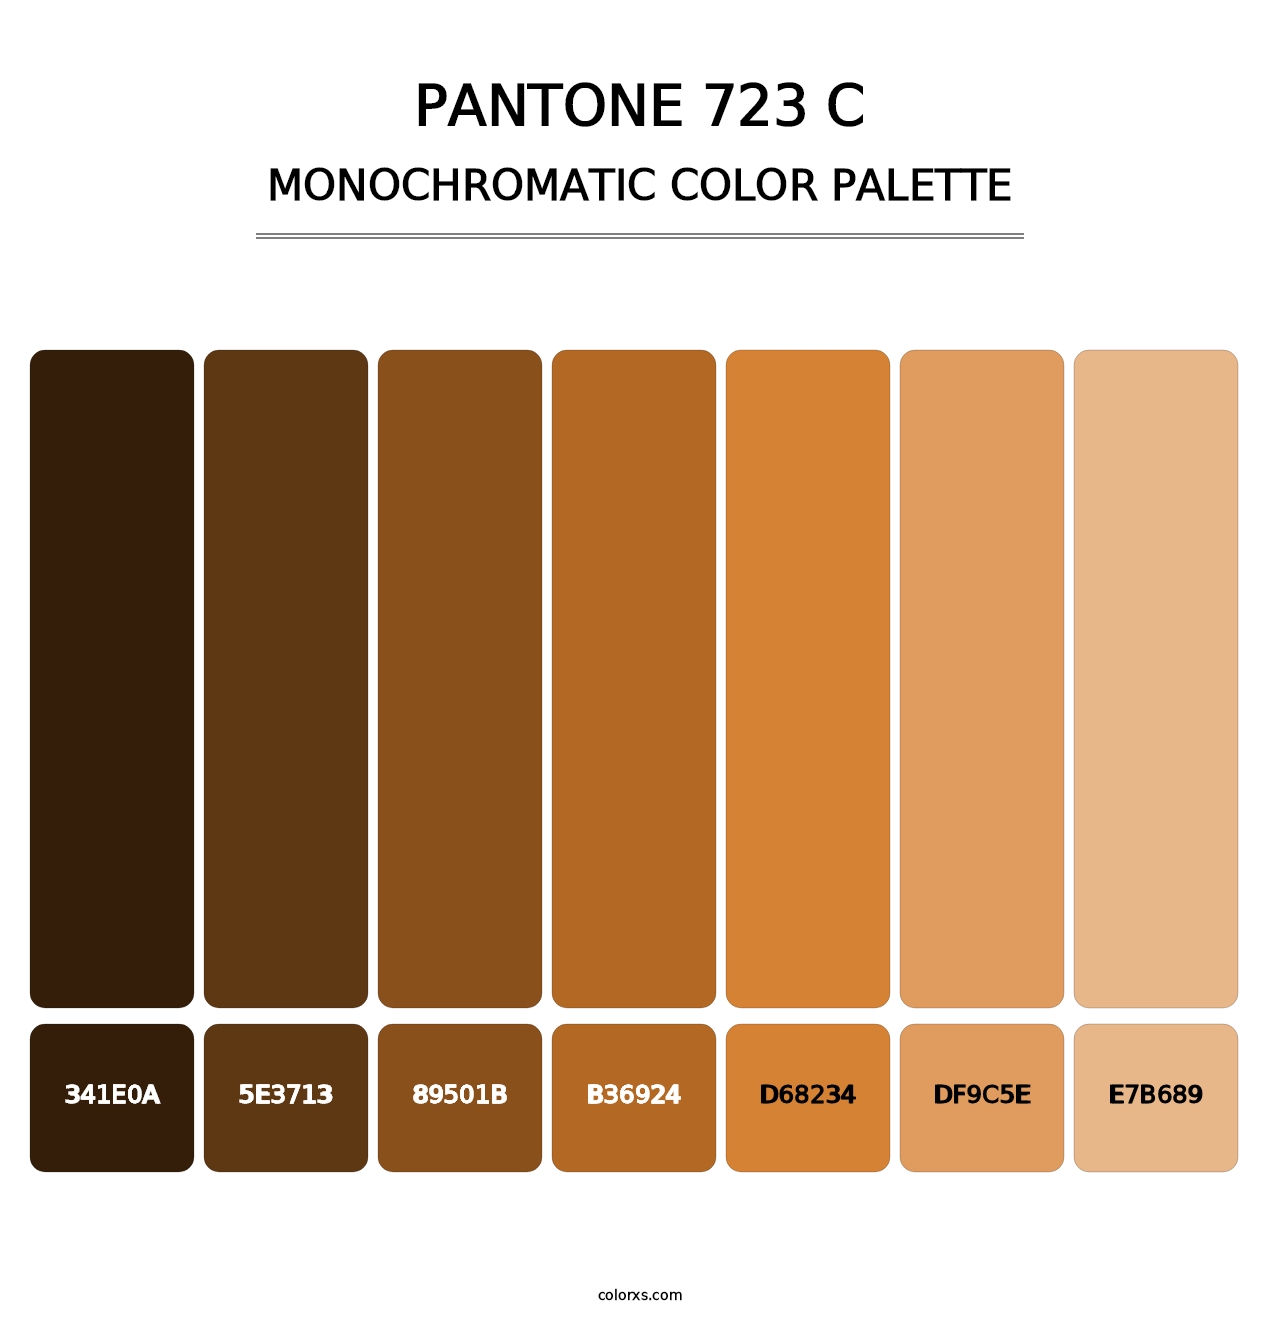 PANTONE 723 C - Monochromatic Color Palette